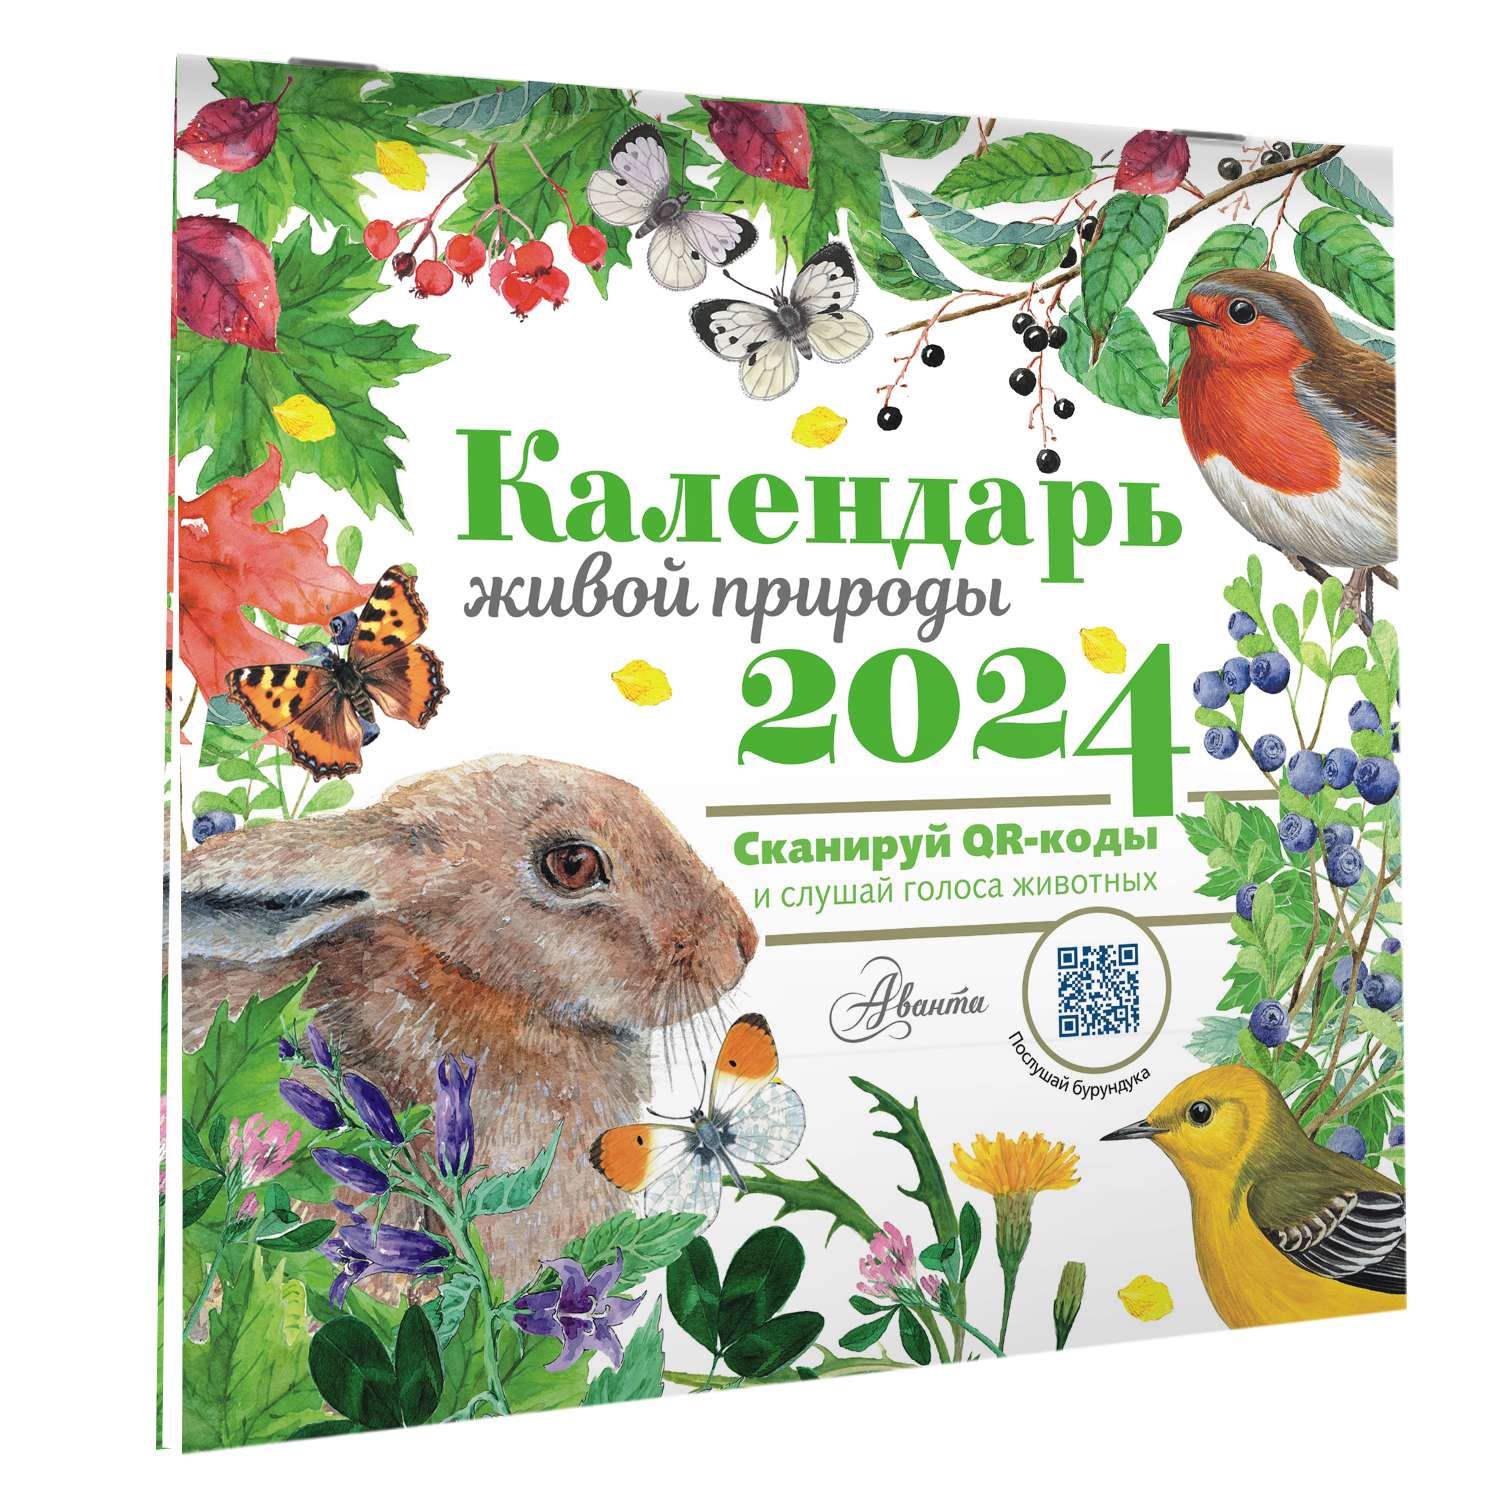 Календарь живой природы с голосами животных 2024 год - фото 6